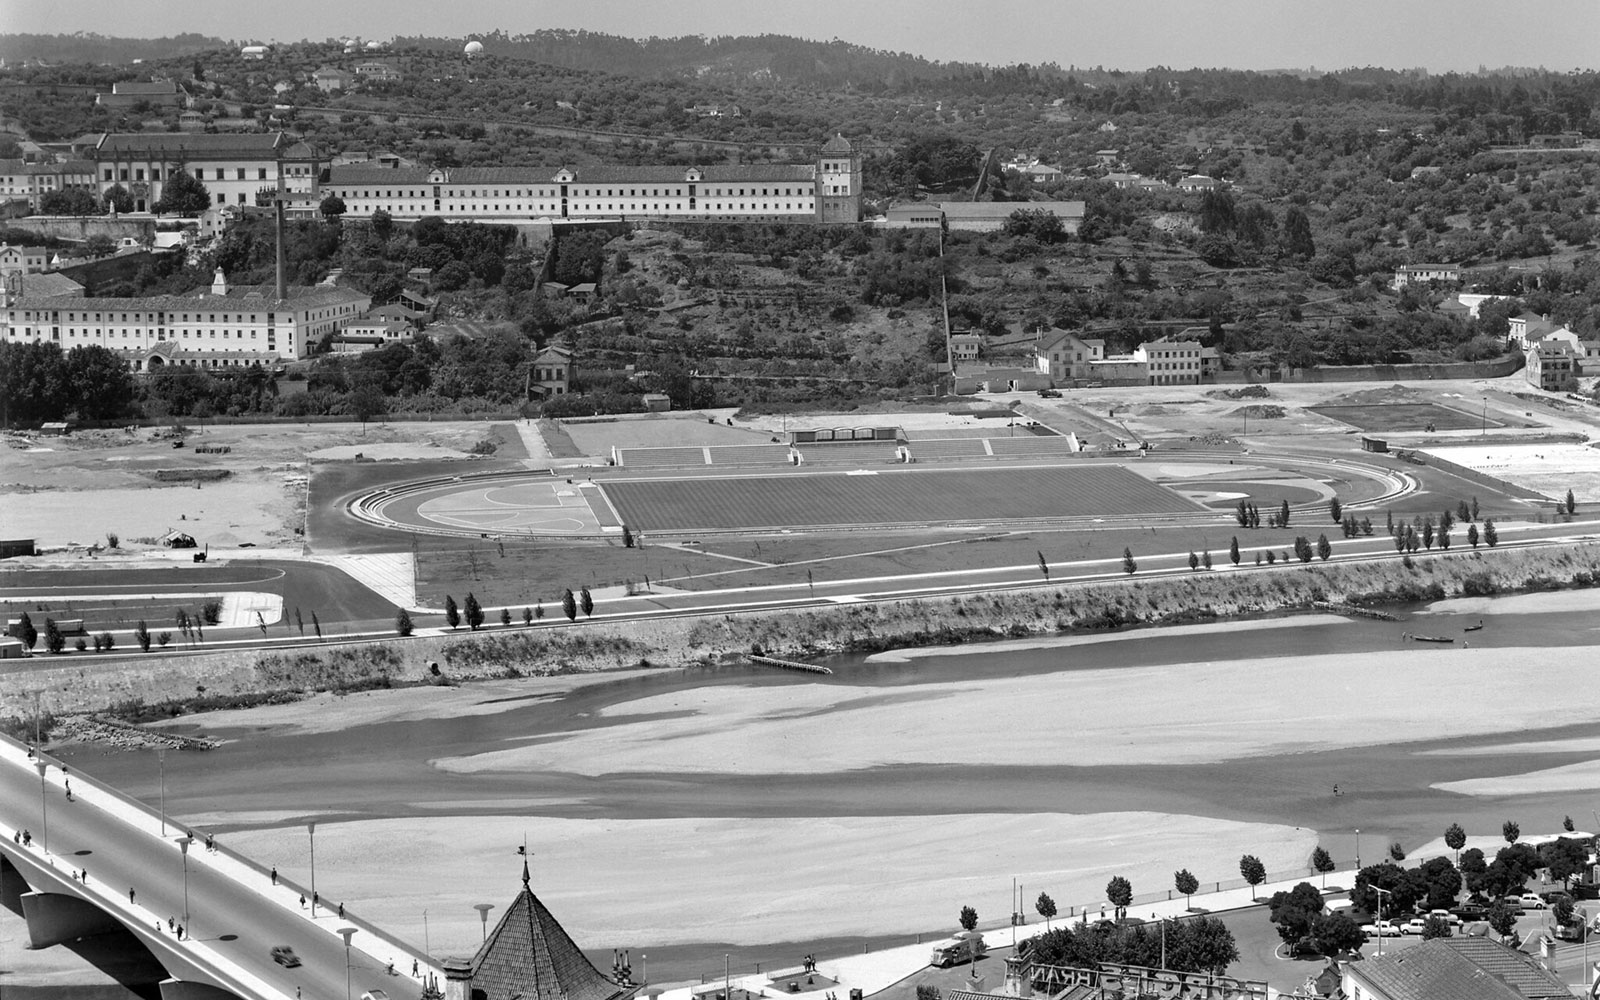 Estádio Universitário de Coimbra, inaugurado em 1963, situado na margem esquerda do rio Mondego.